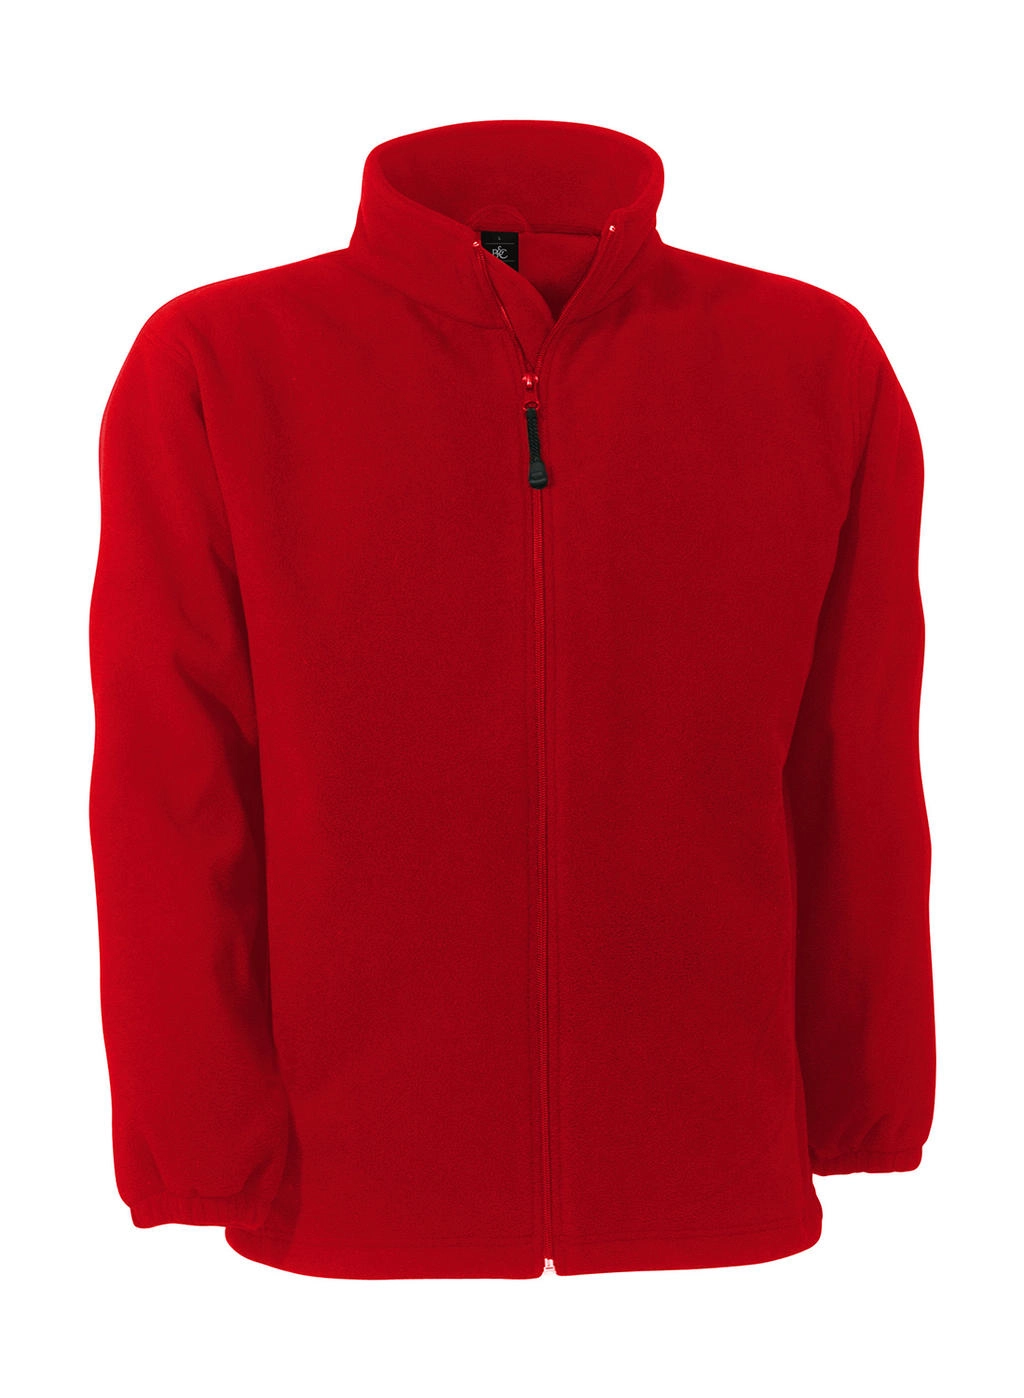 WindProtek Waterproof Fleece Jacket zum Besticken und Bedrucken in der Farbe Red mit Ihren Logo, Schriftzug oder Motiv.